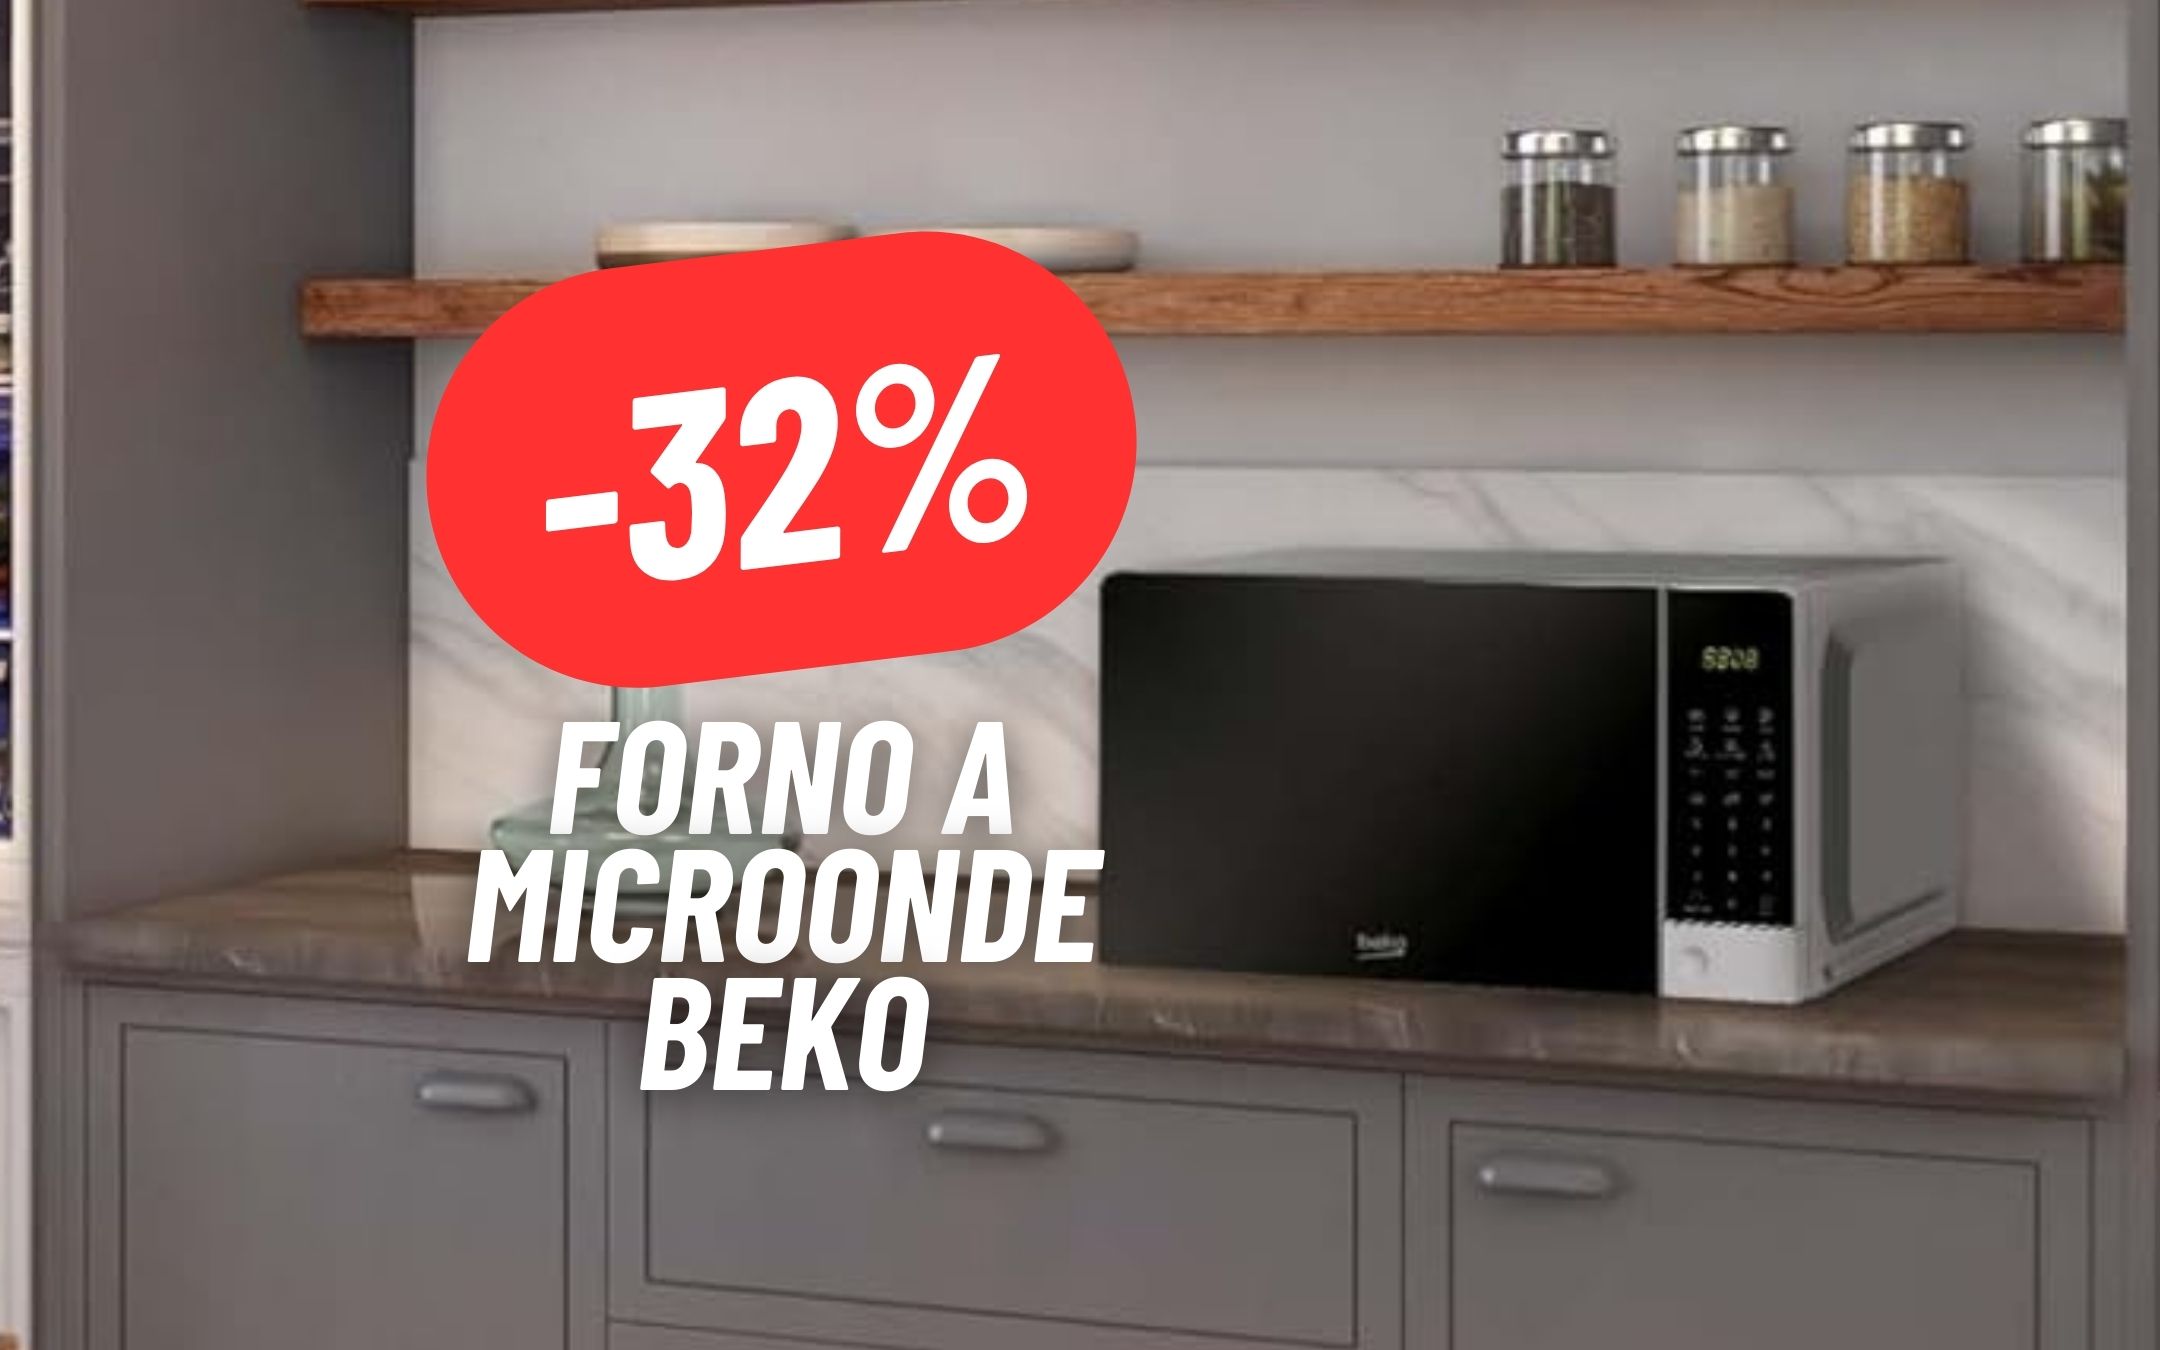 L'alleato perfetto in cucina è Beko: Forno a Microonde al 32% DI SCONTO